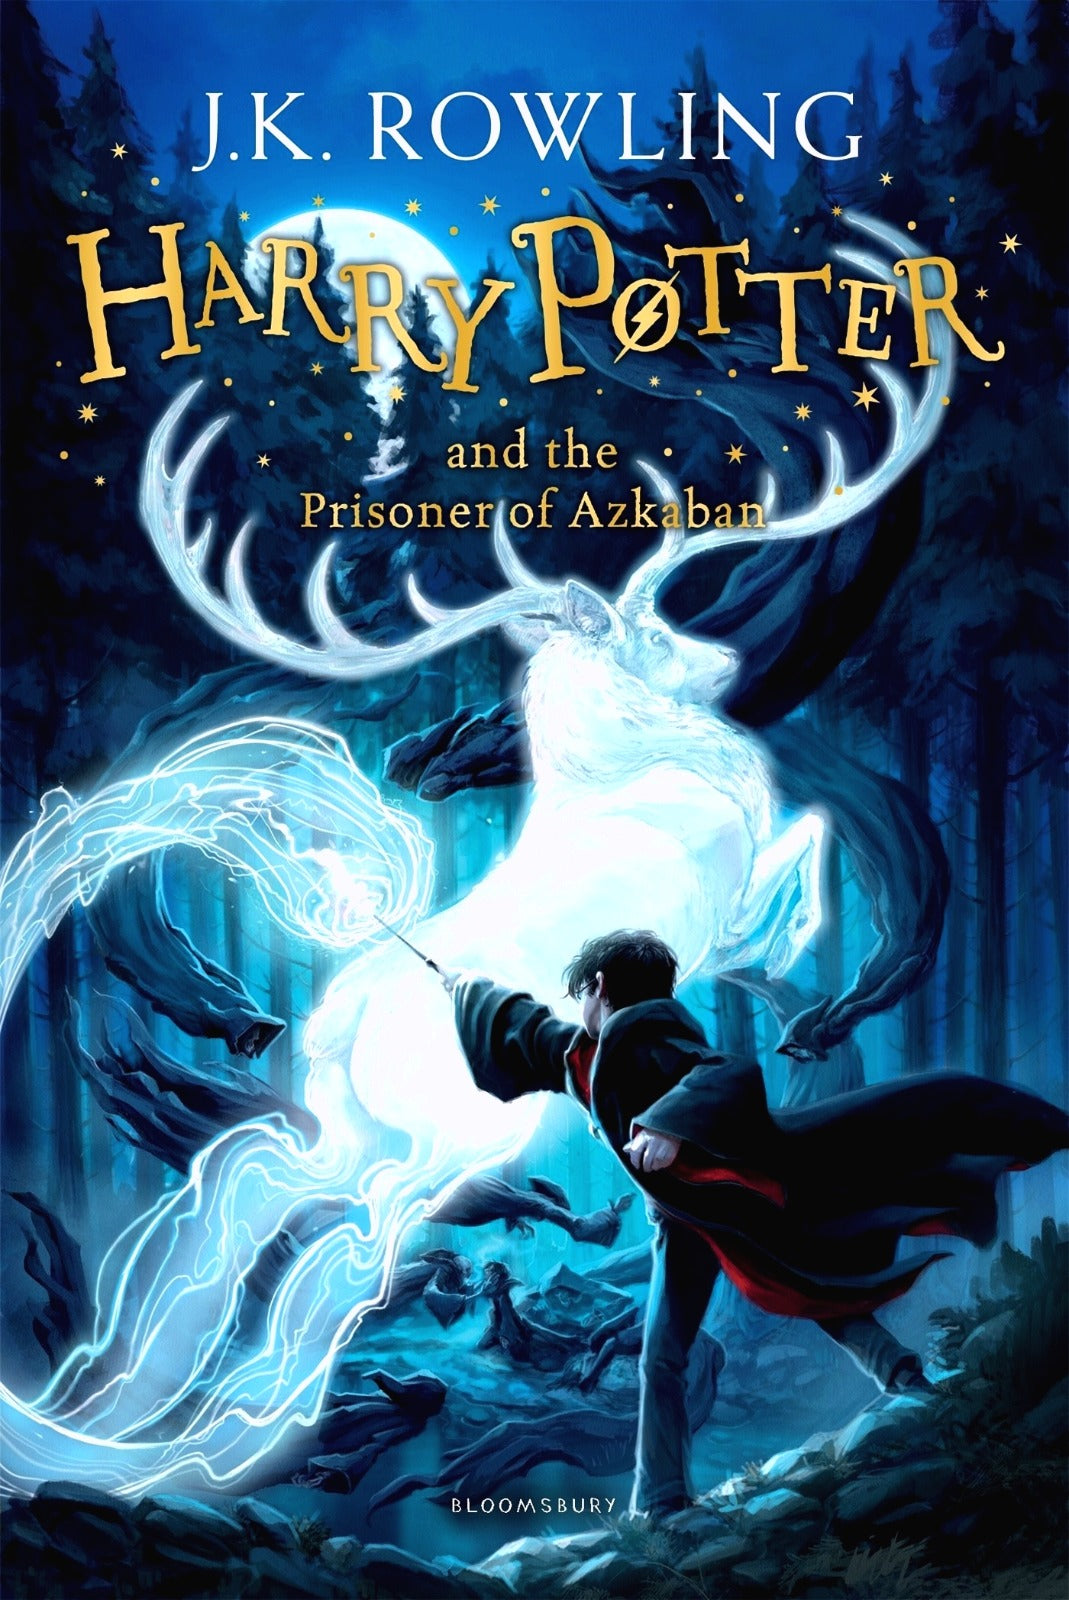 Harry Potter #3 Harry Potter and the Prisoner of Azkaban